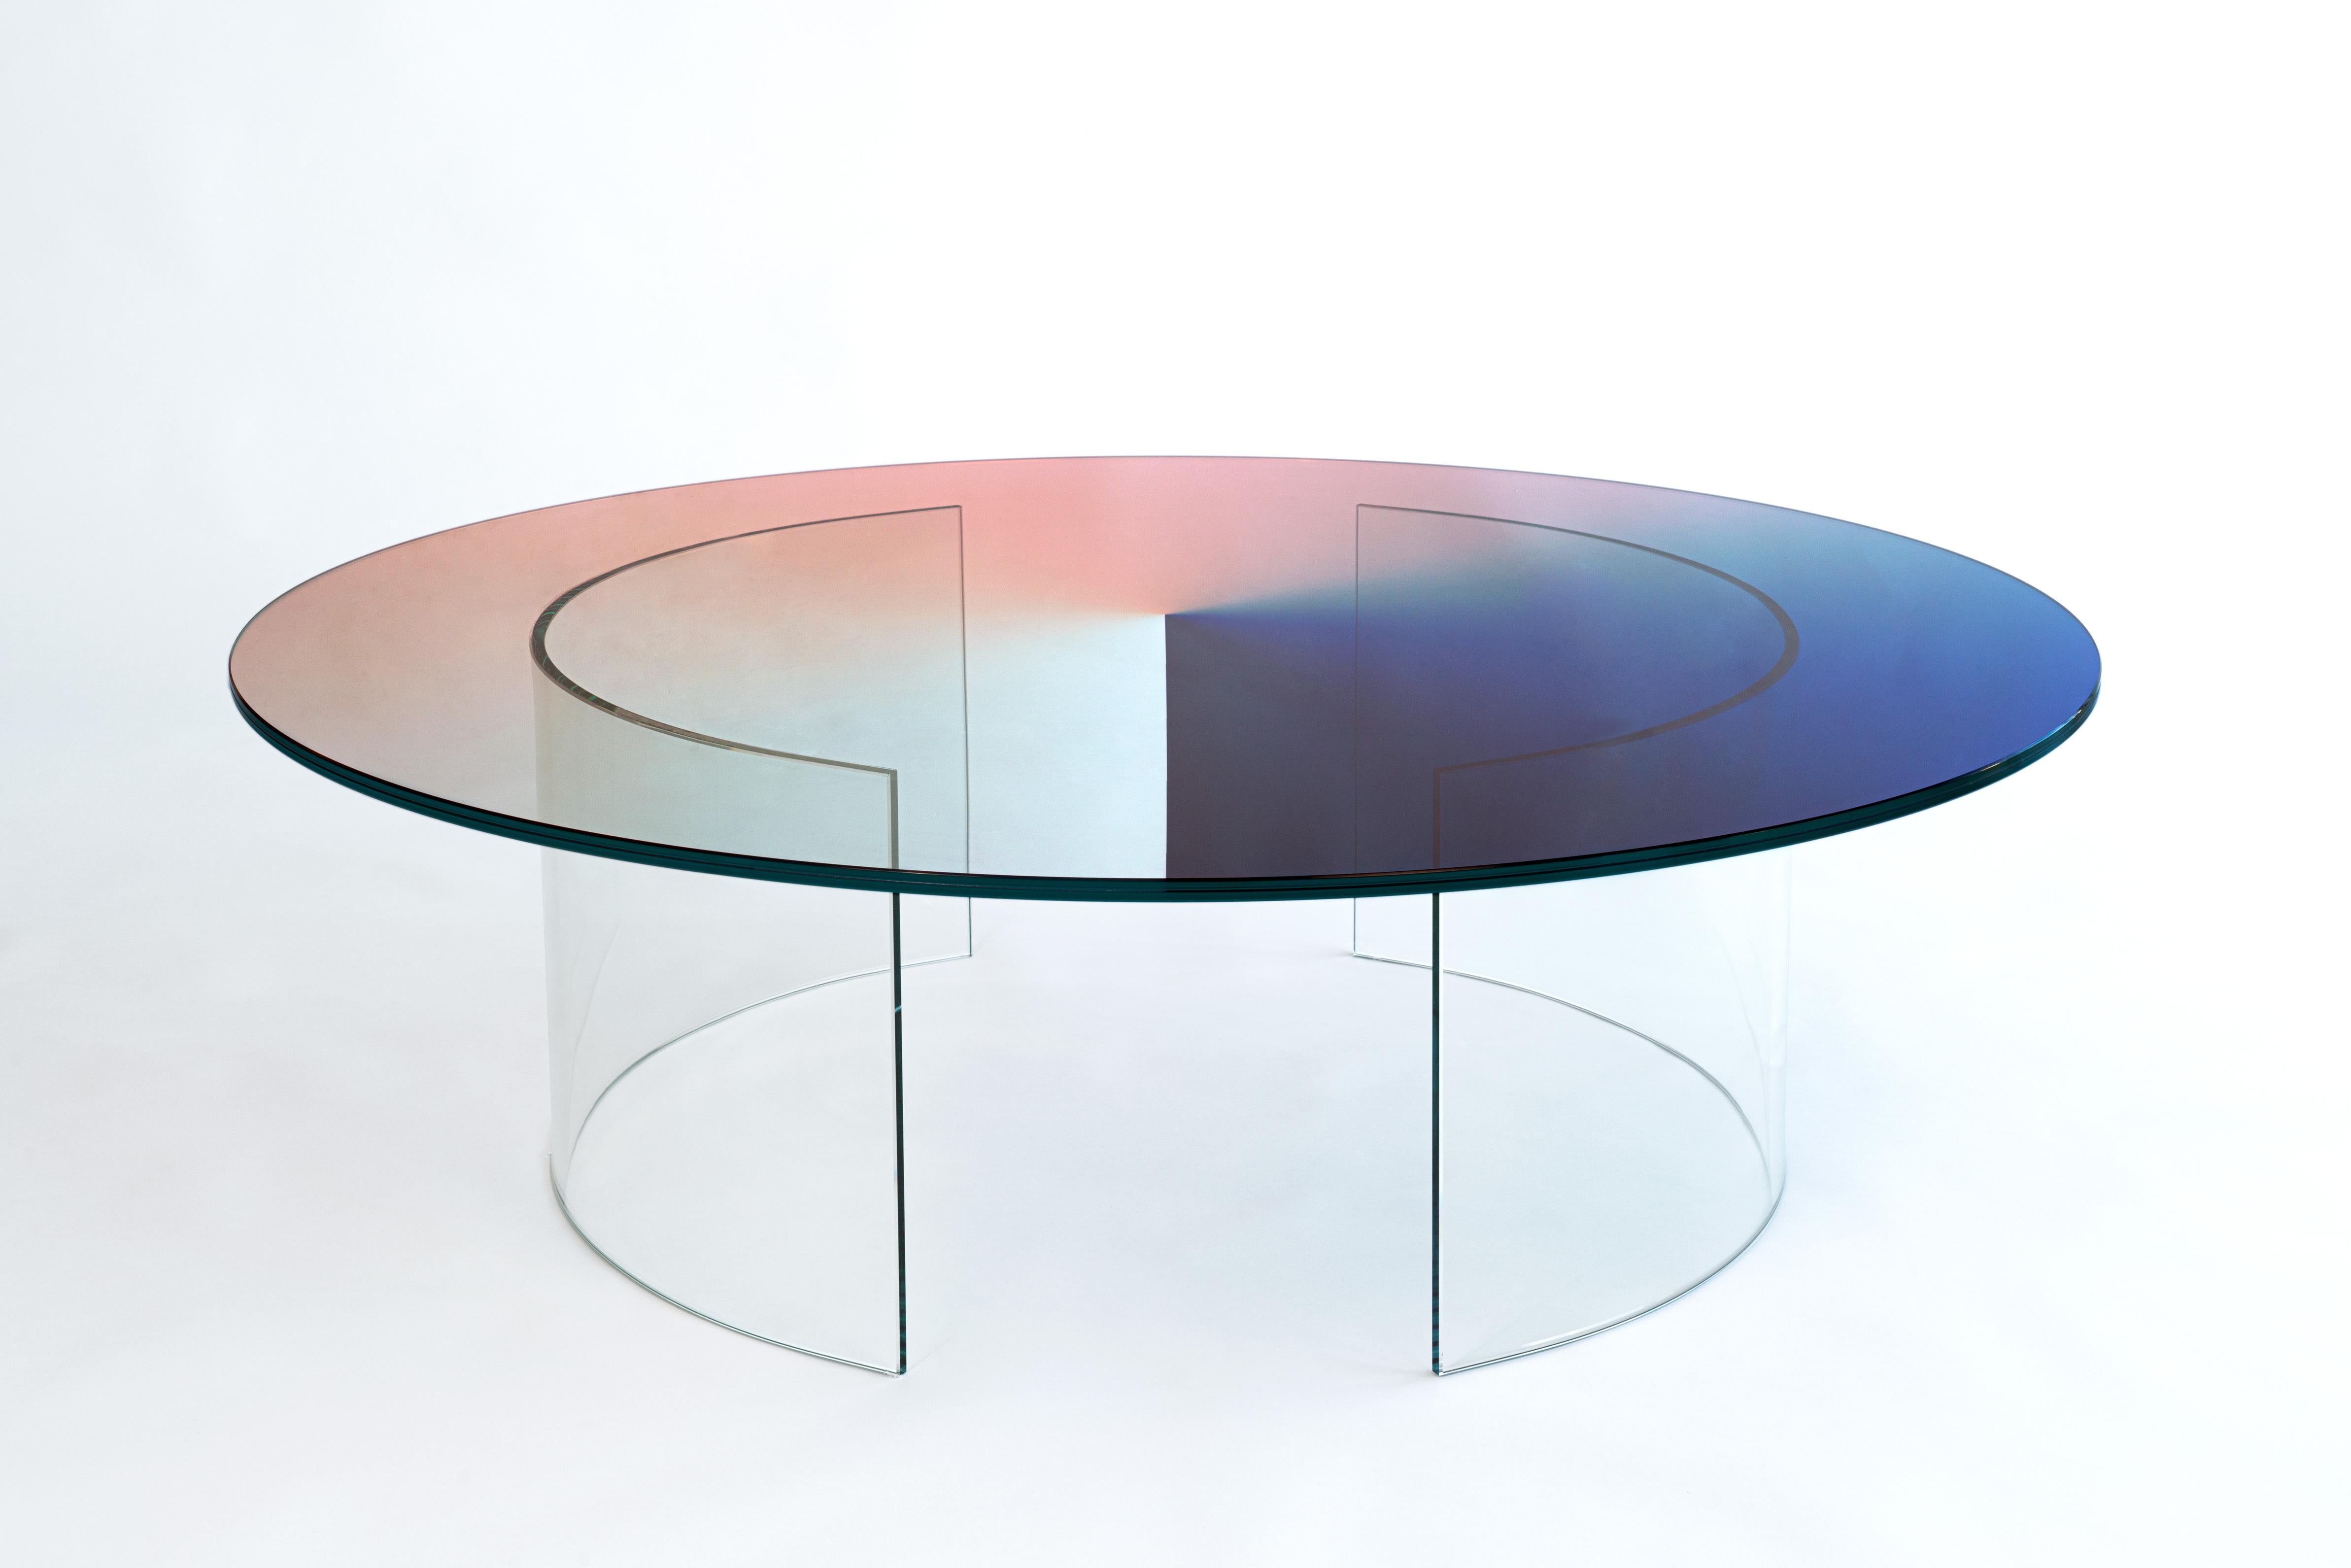 La table Color Dial Curved se caractérise par un plateau en verre entièrement transparent et des pieds incurvés sur mesure qui sont fixés au plateau. La table est un élément sculptural qui projette des couleurs sur son environnement et reflète des